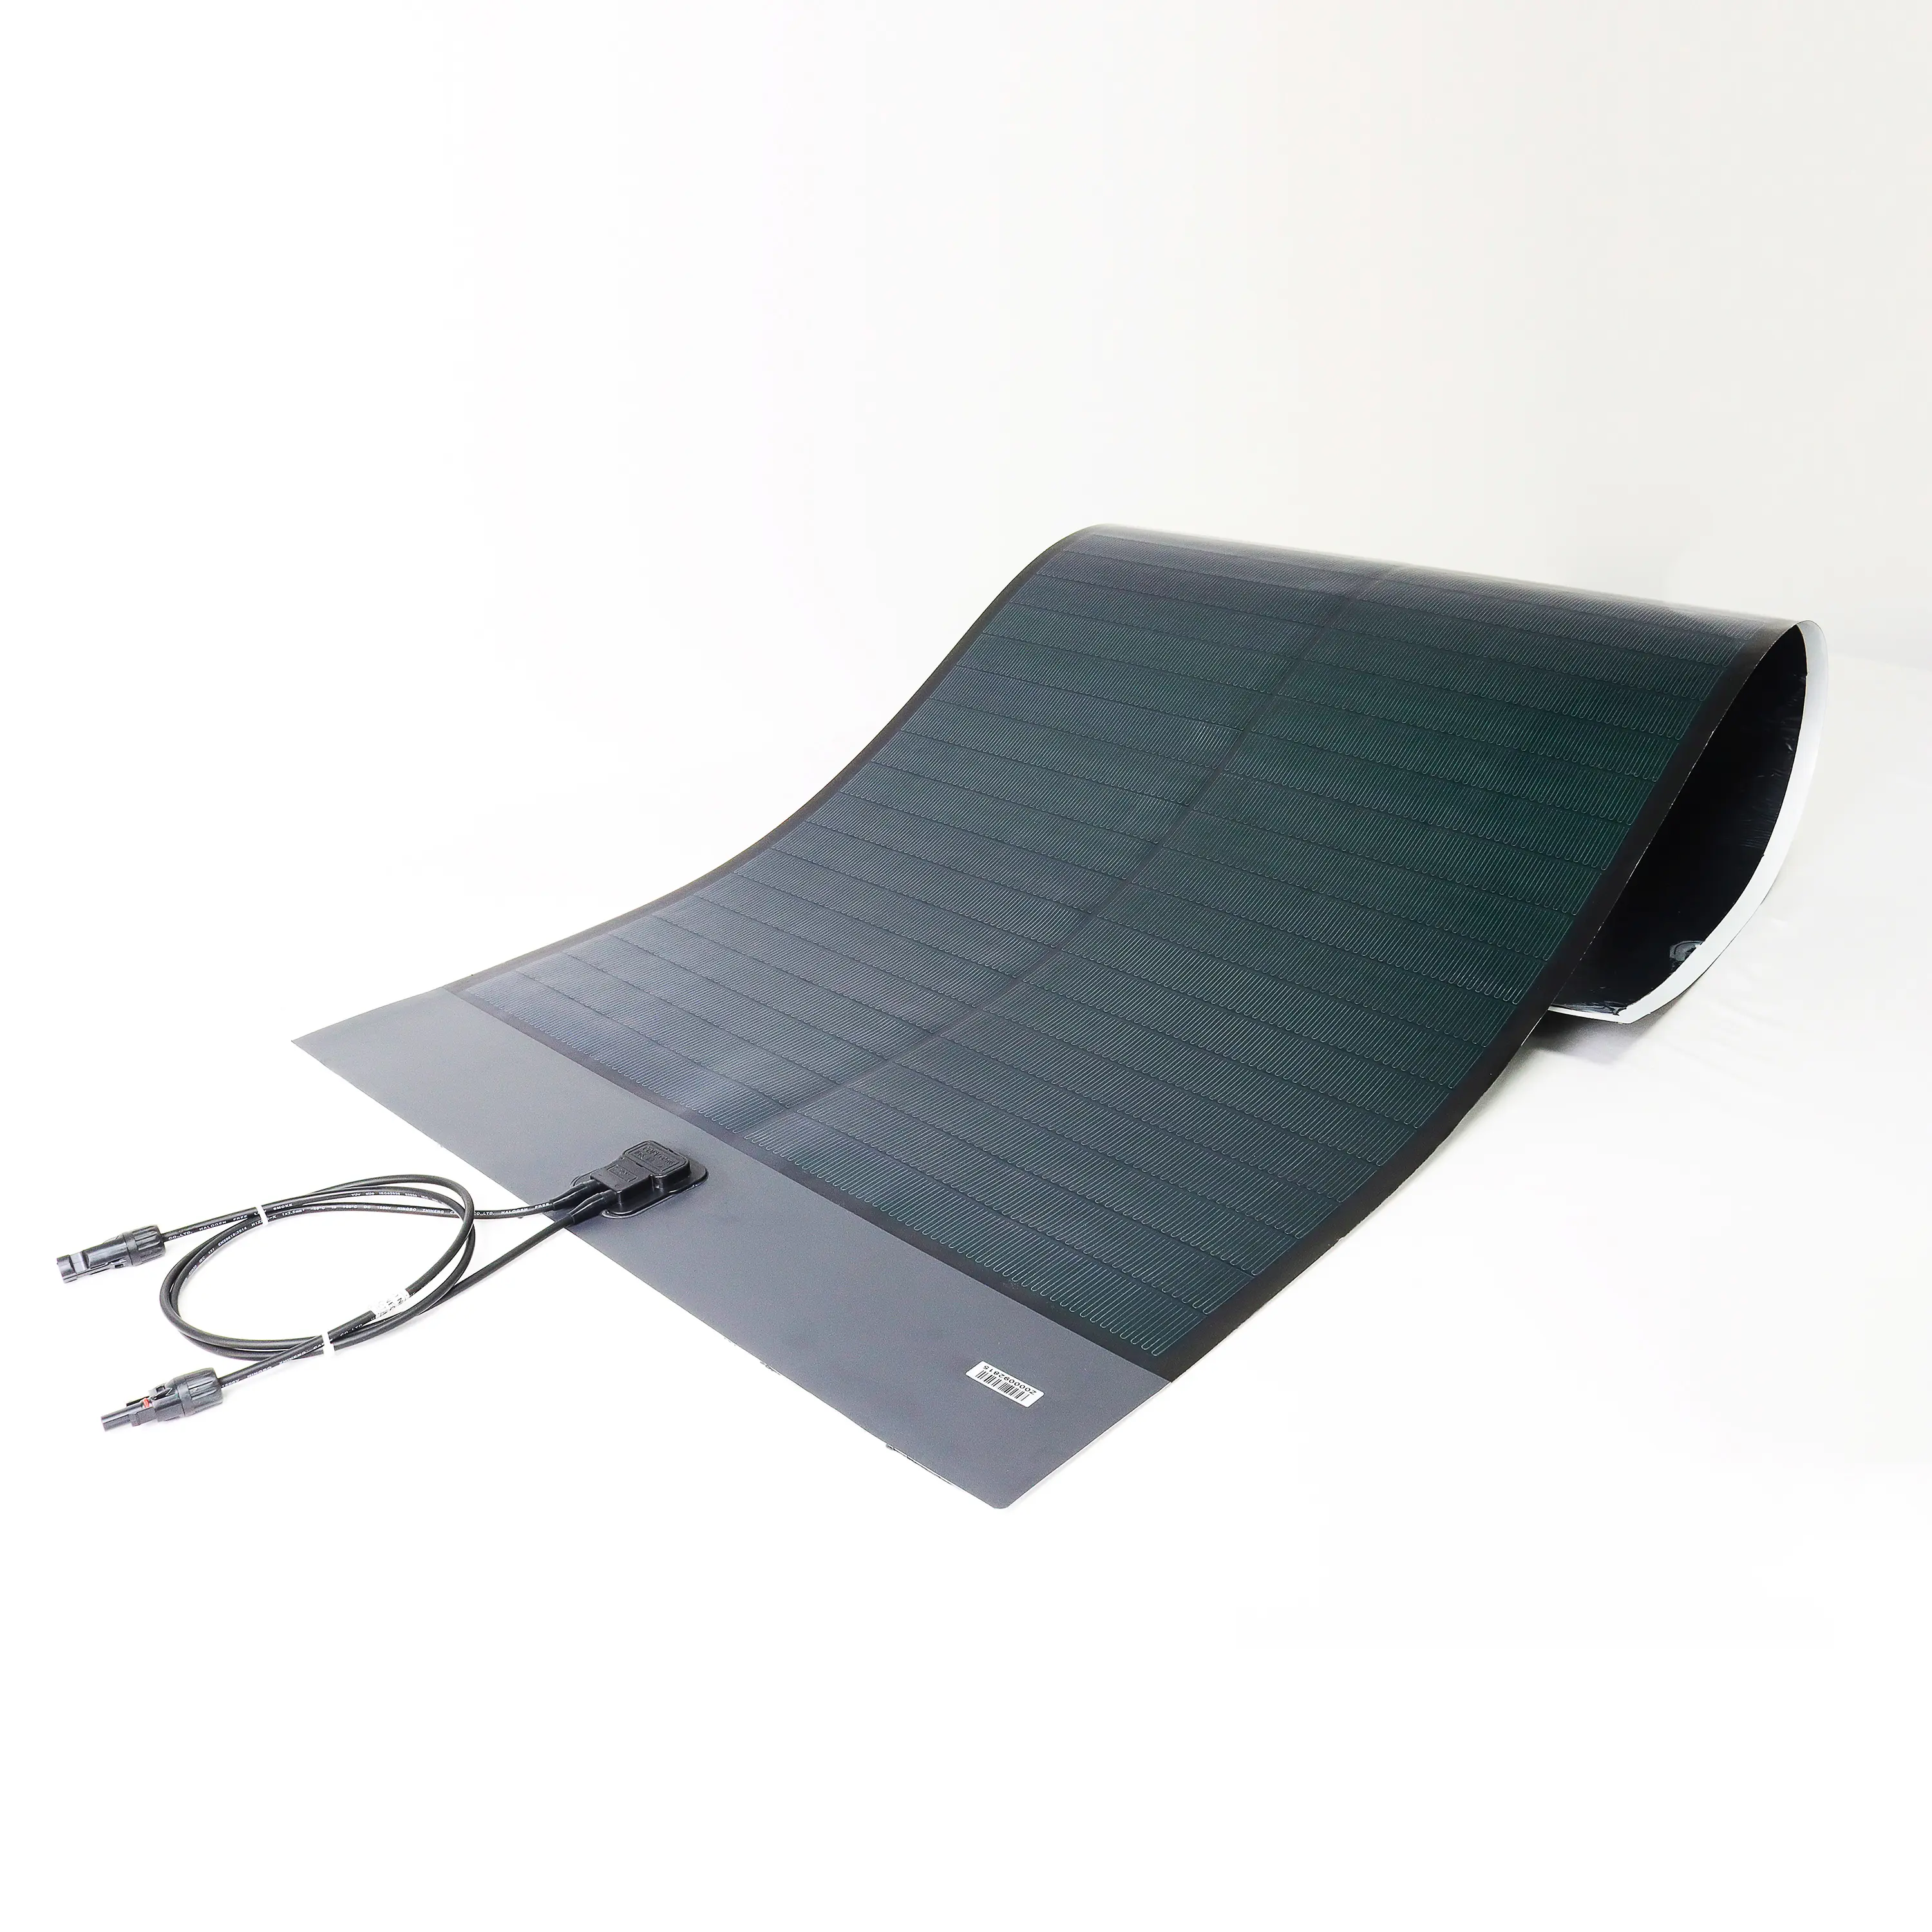 160 Вт, тонкопленочная Гибкая солнечная панель для многофункционального использования, как солнечная Автомобильная лодка, RV кемпинг